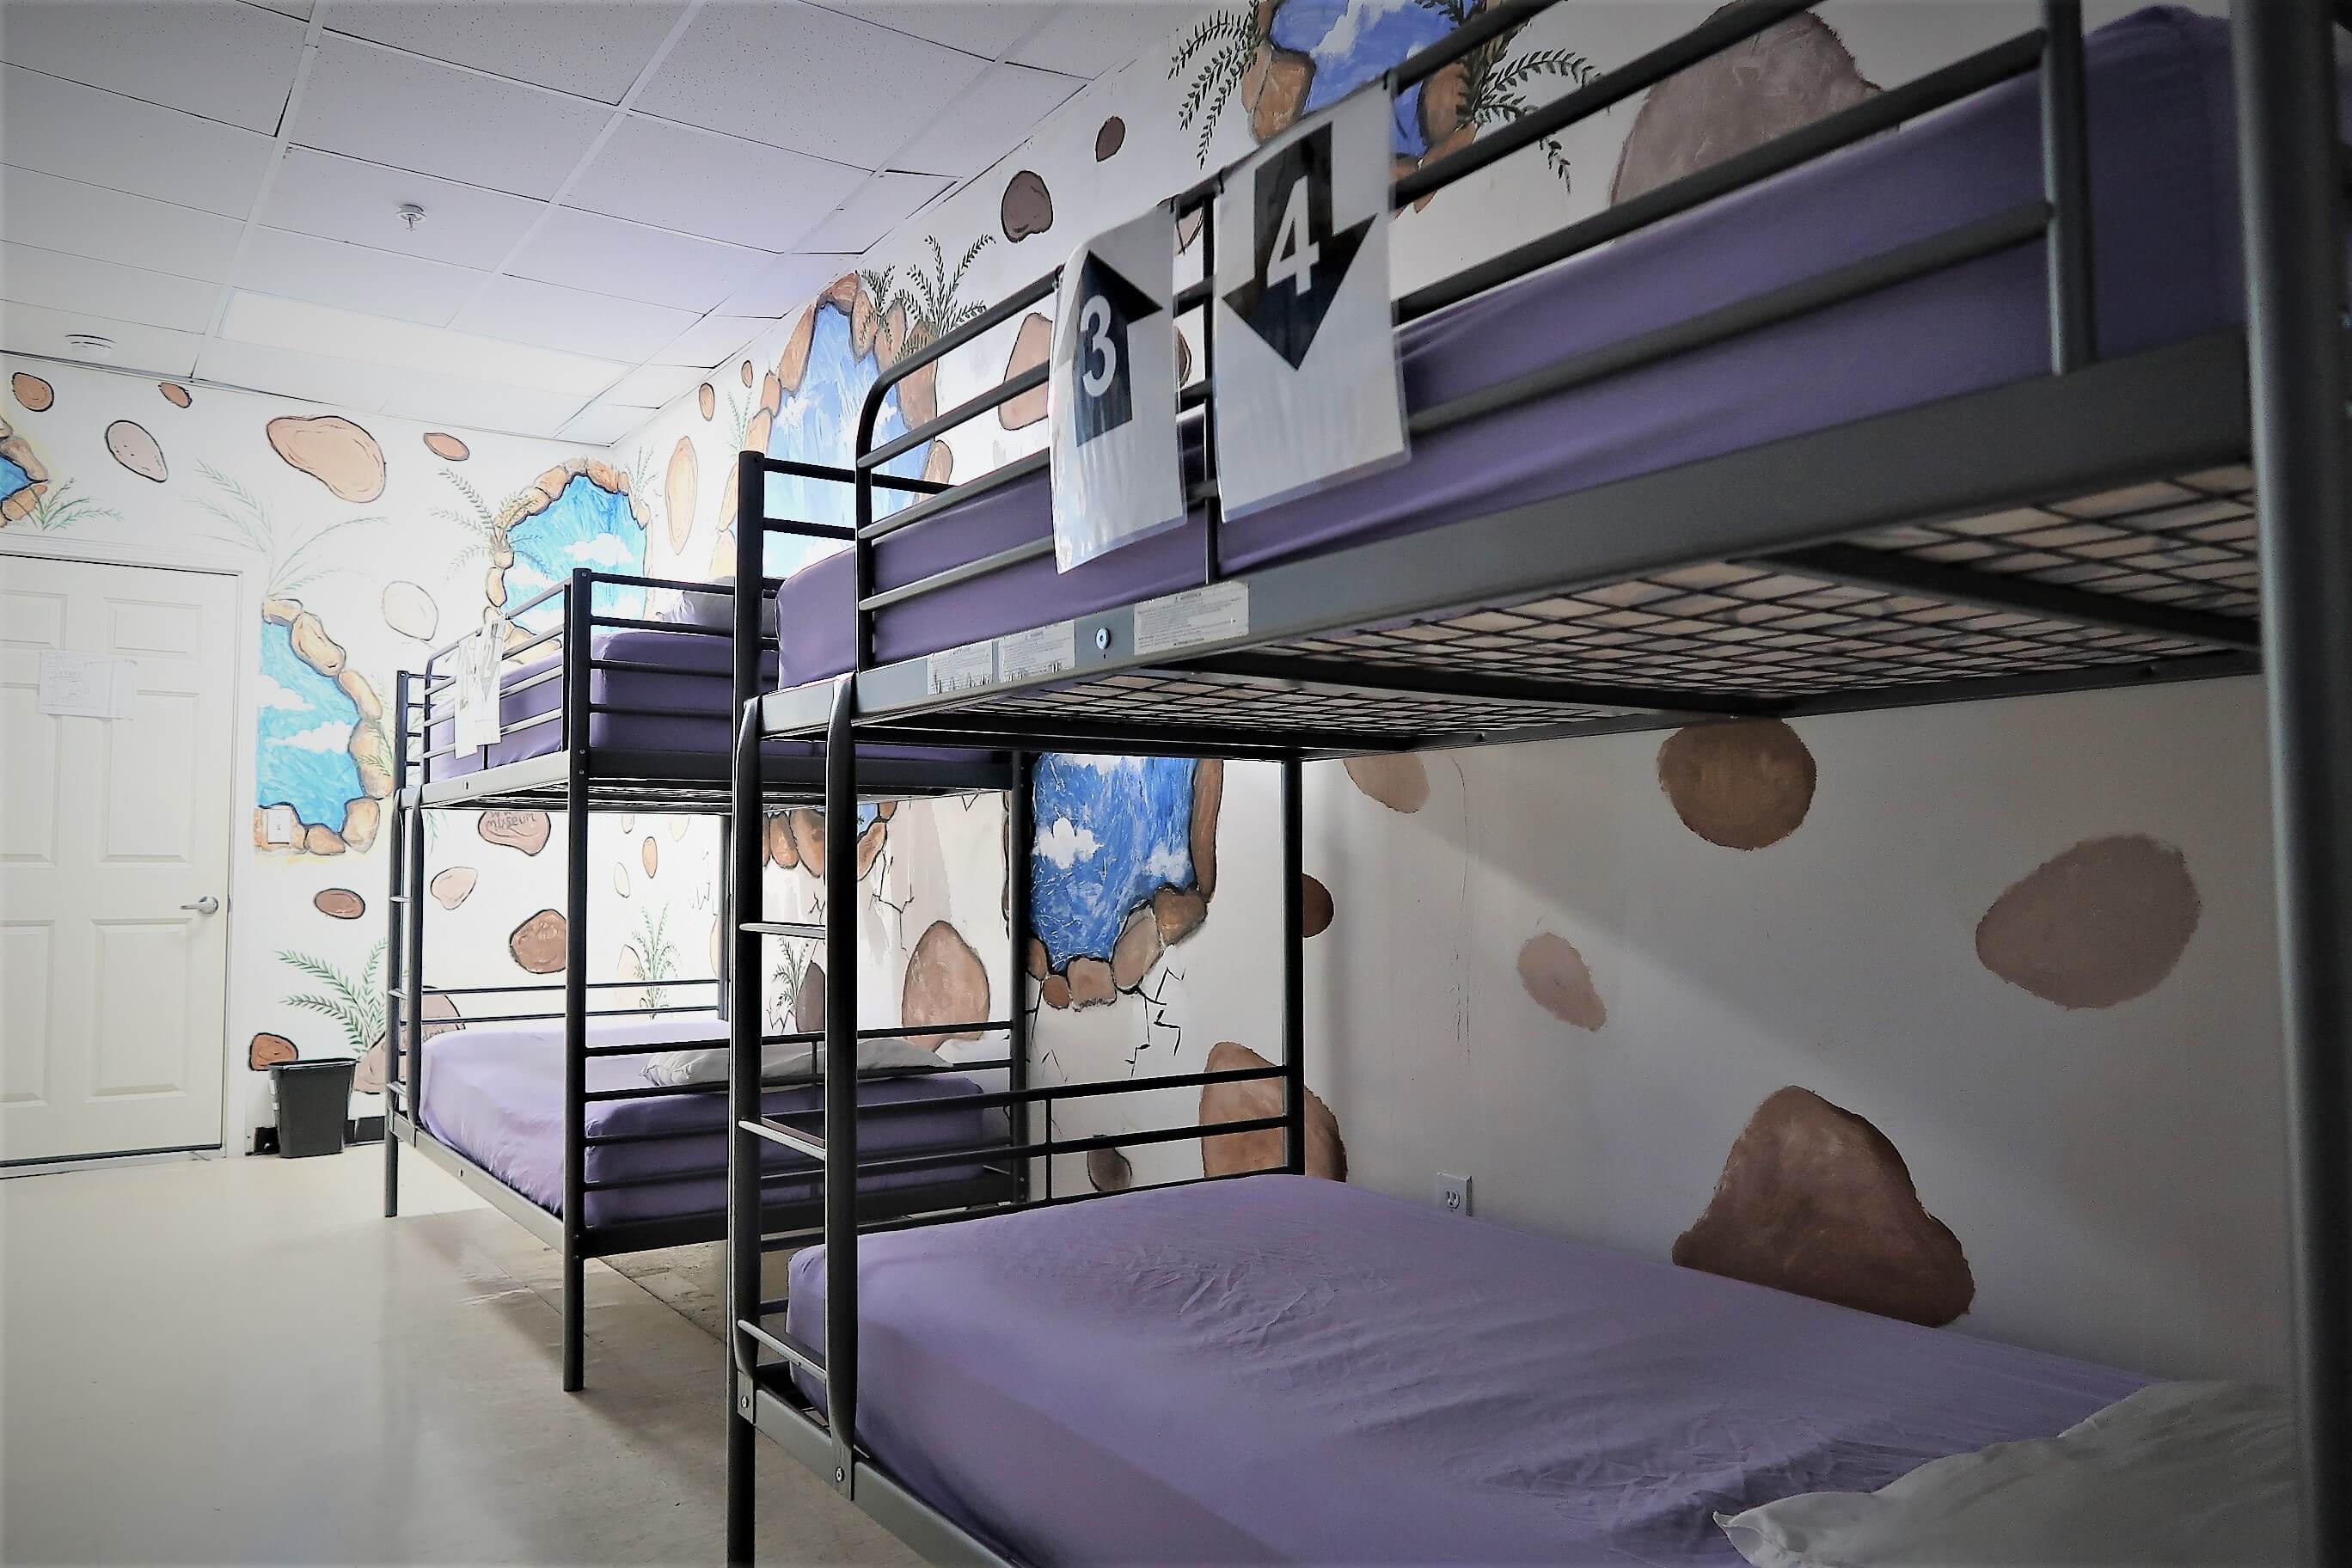 4 Bed Mixed Dorm